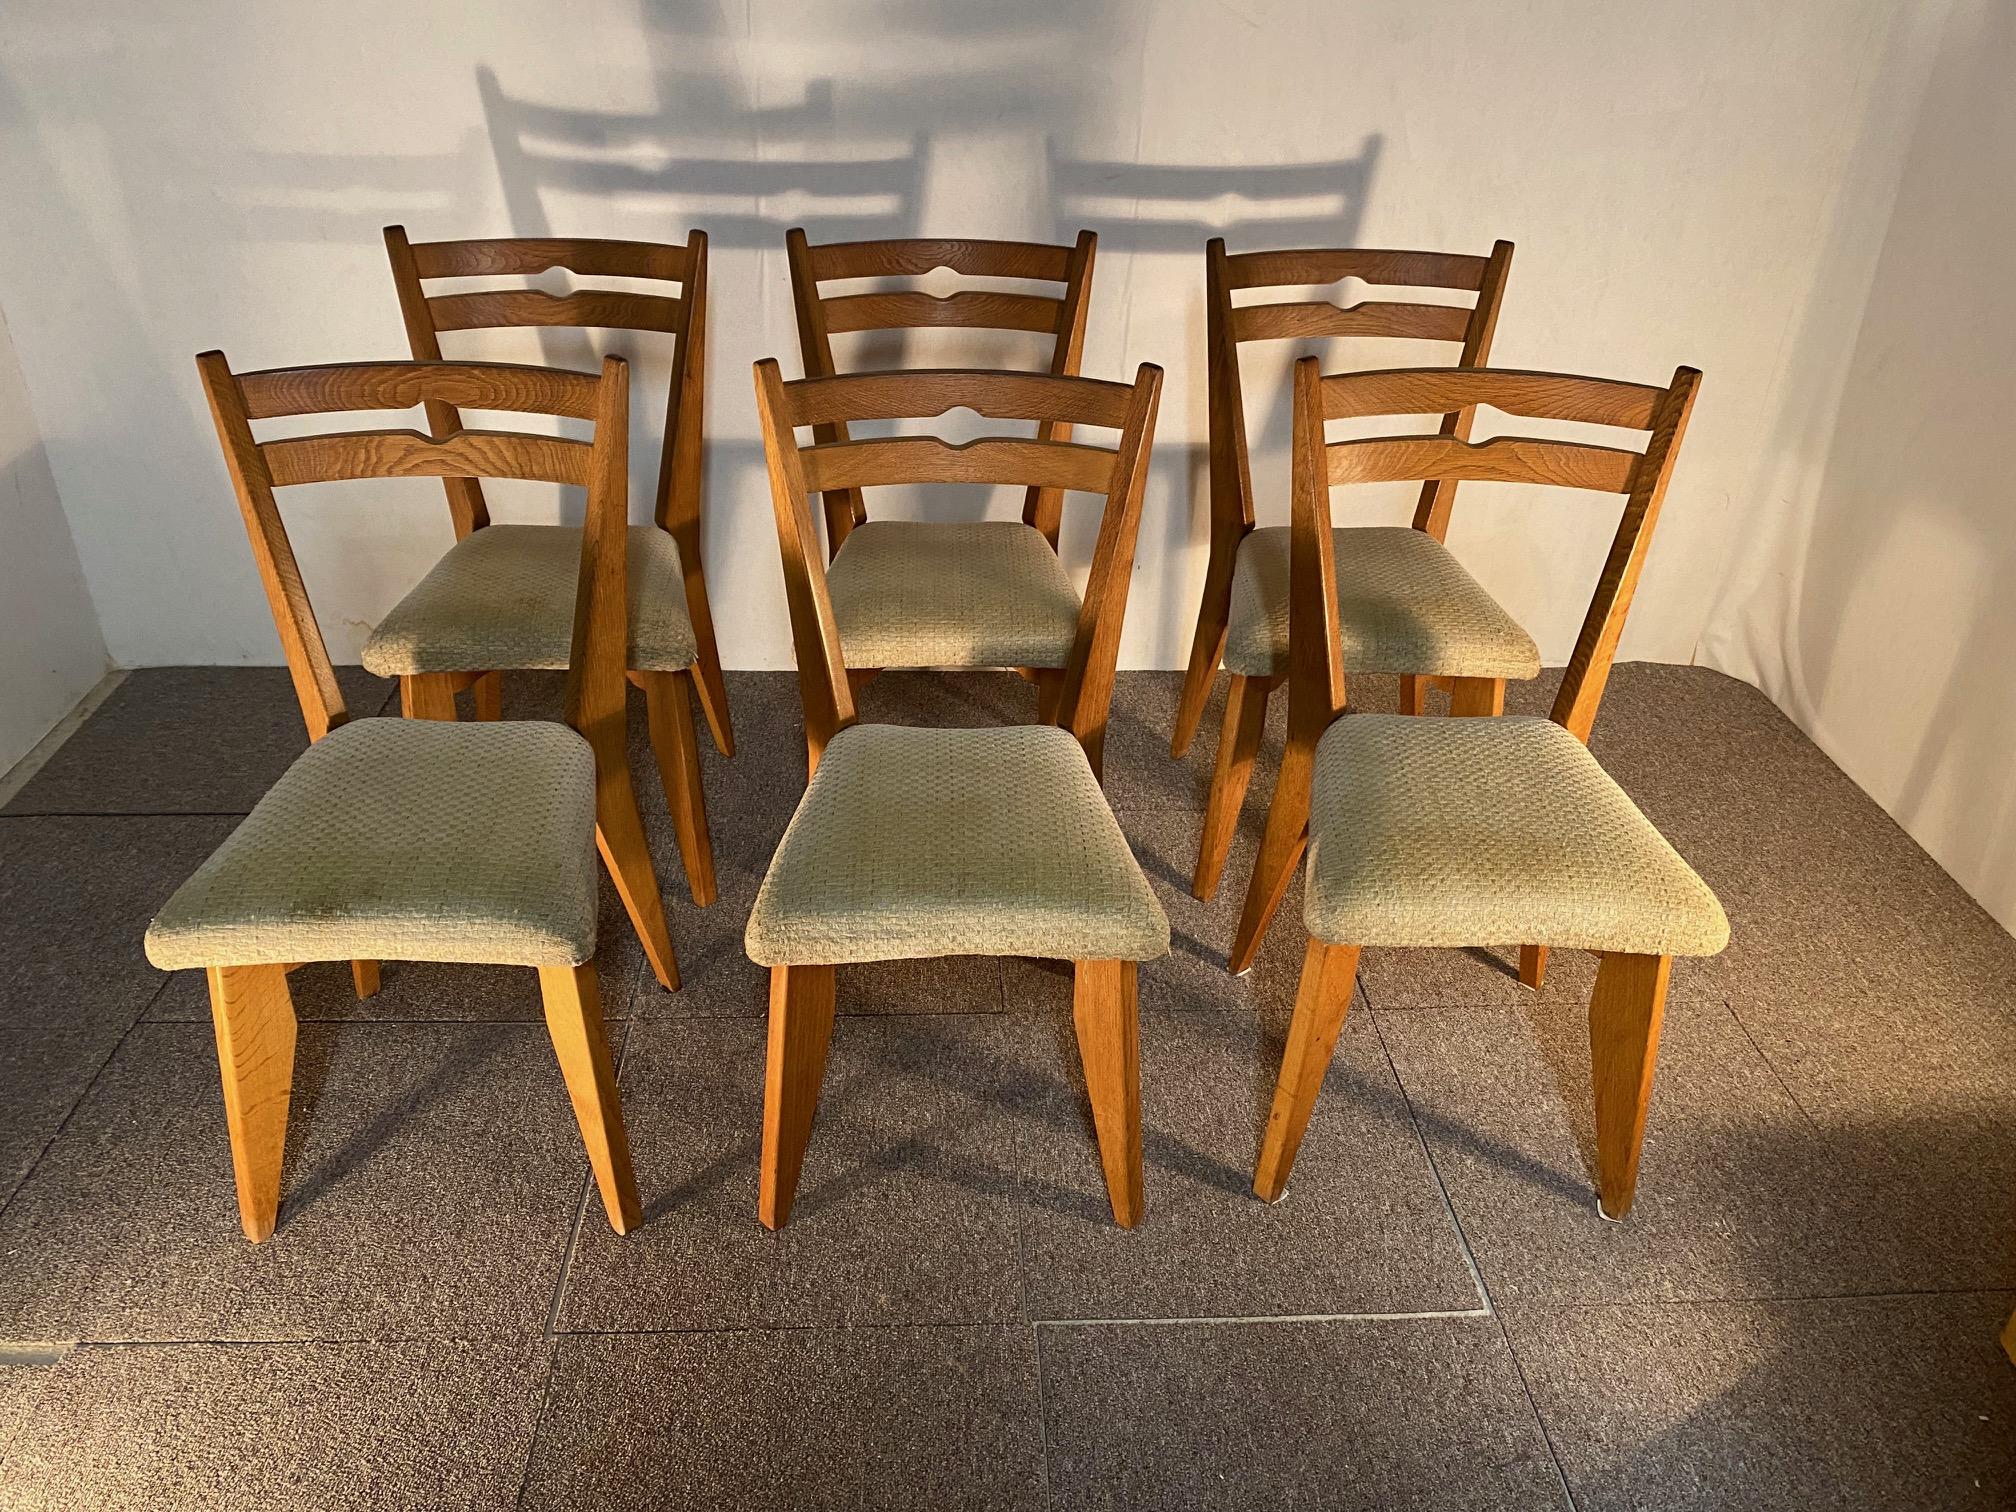 Six chaises, Guillerme et Chambron en chêne, des années 1960.
Six chaises, Guillerme et Chambron en chêne, des années 1960.
Elles sont en bon état.

Robert GUILLERME (1013-1990) & Jacques CHAMBRON (1914-2001) se sont rencontrés sur le front pendant